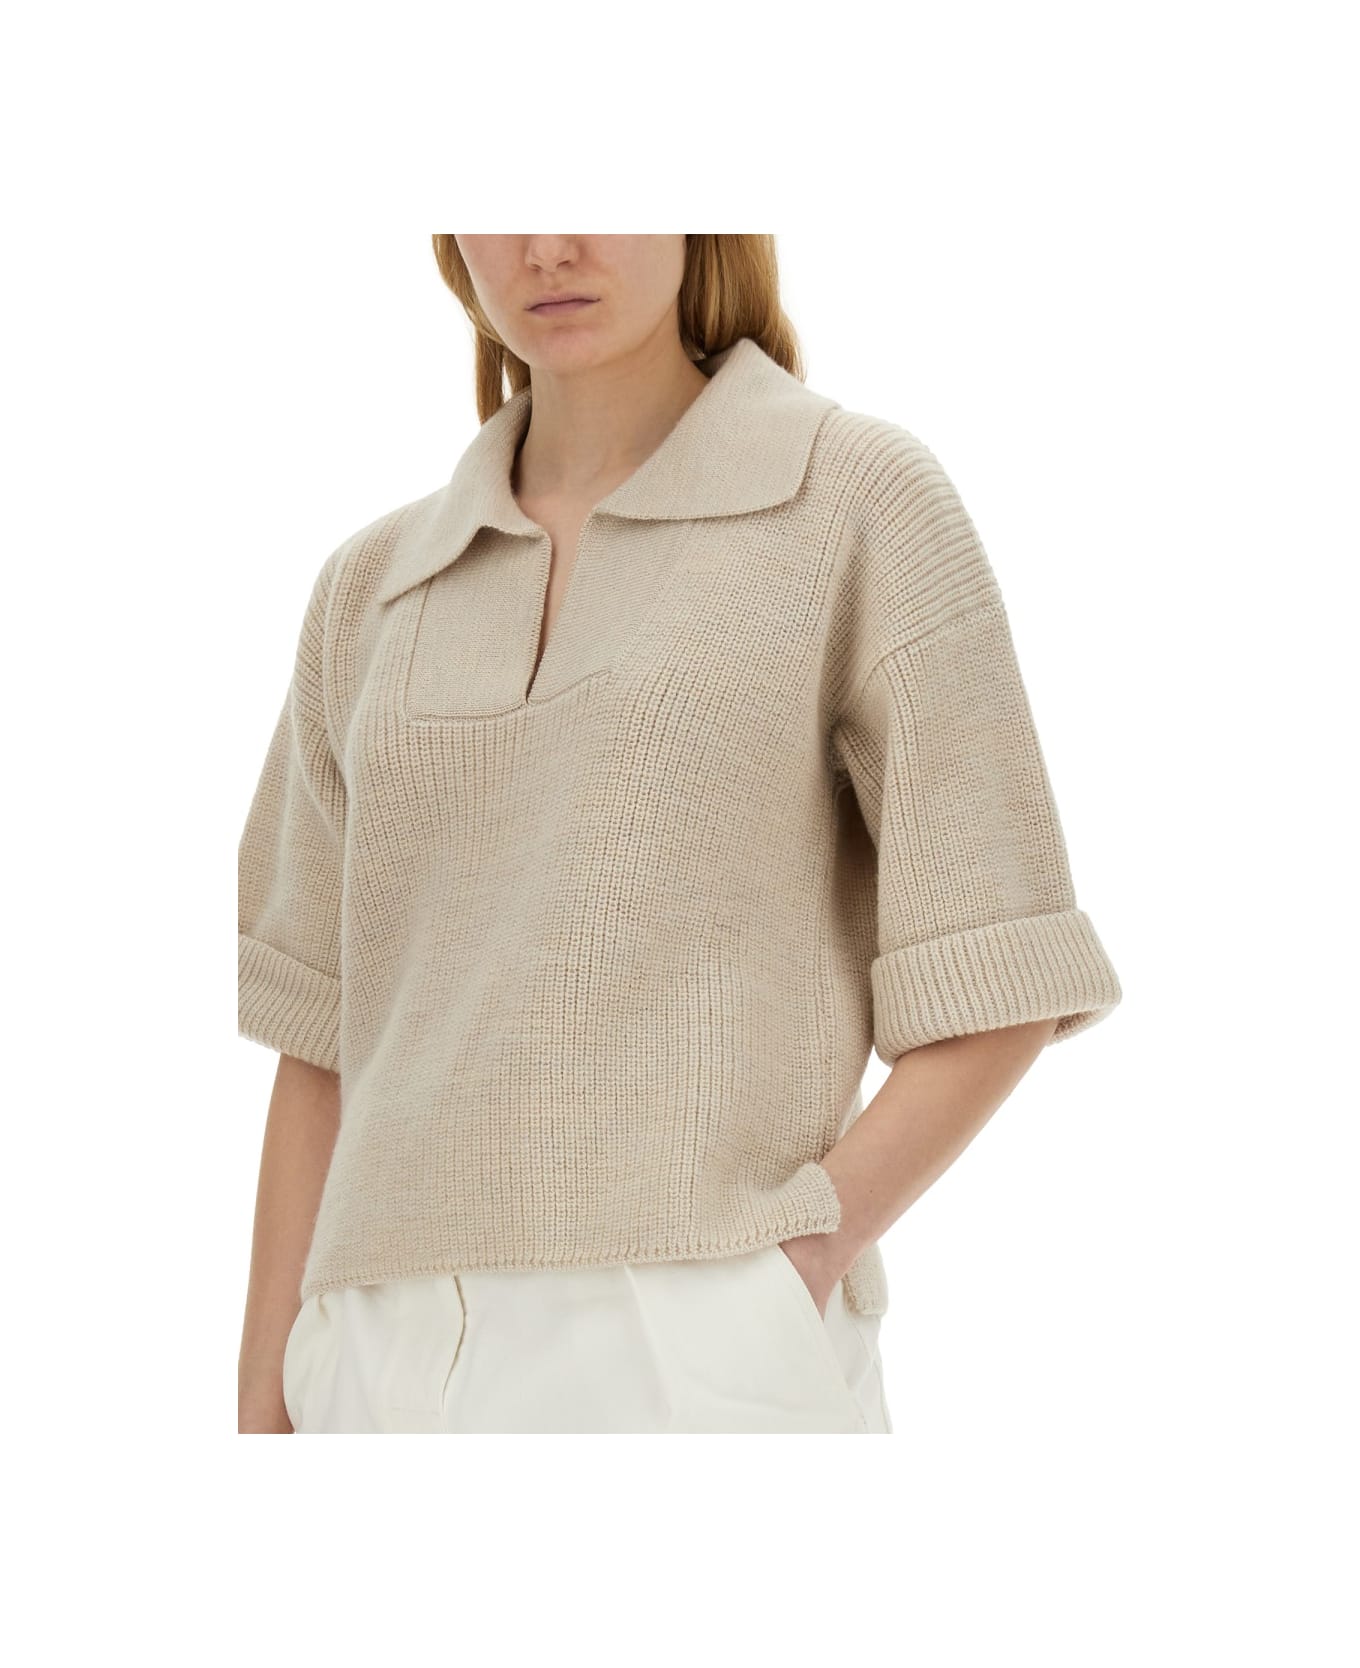 Margaret Howell Knitted T-shirt - BEIGE